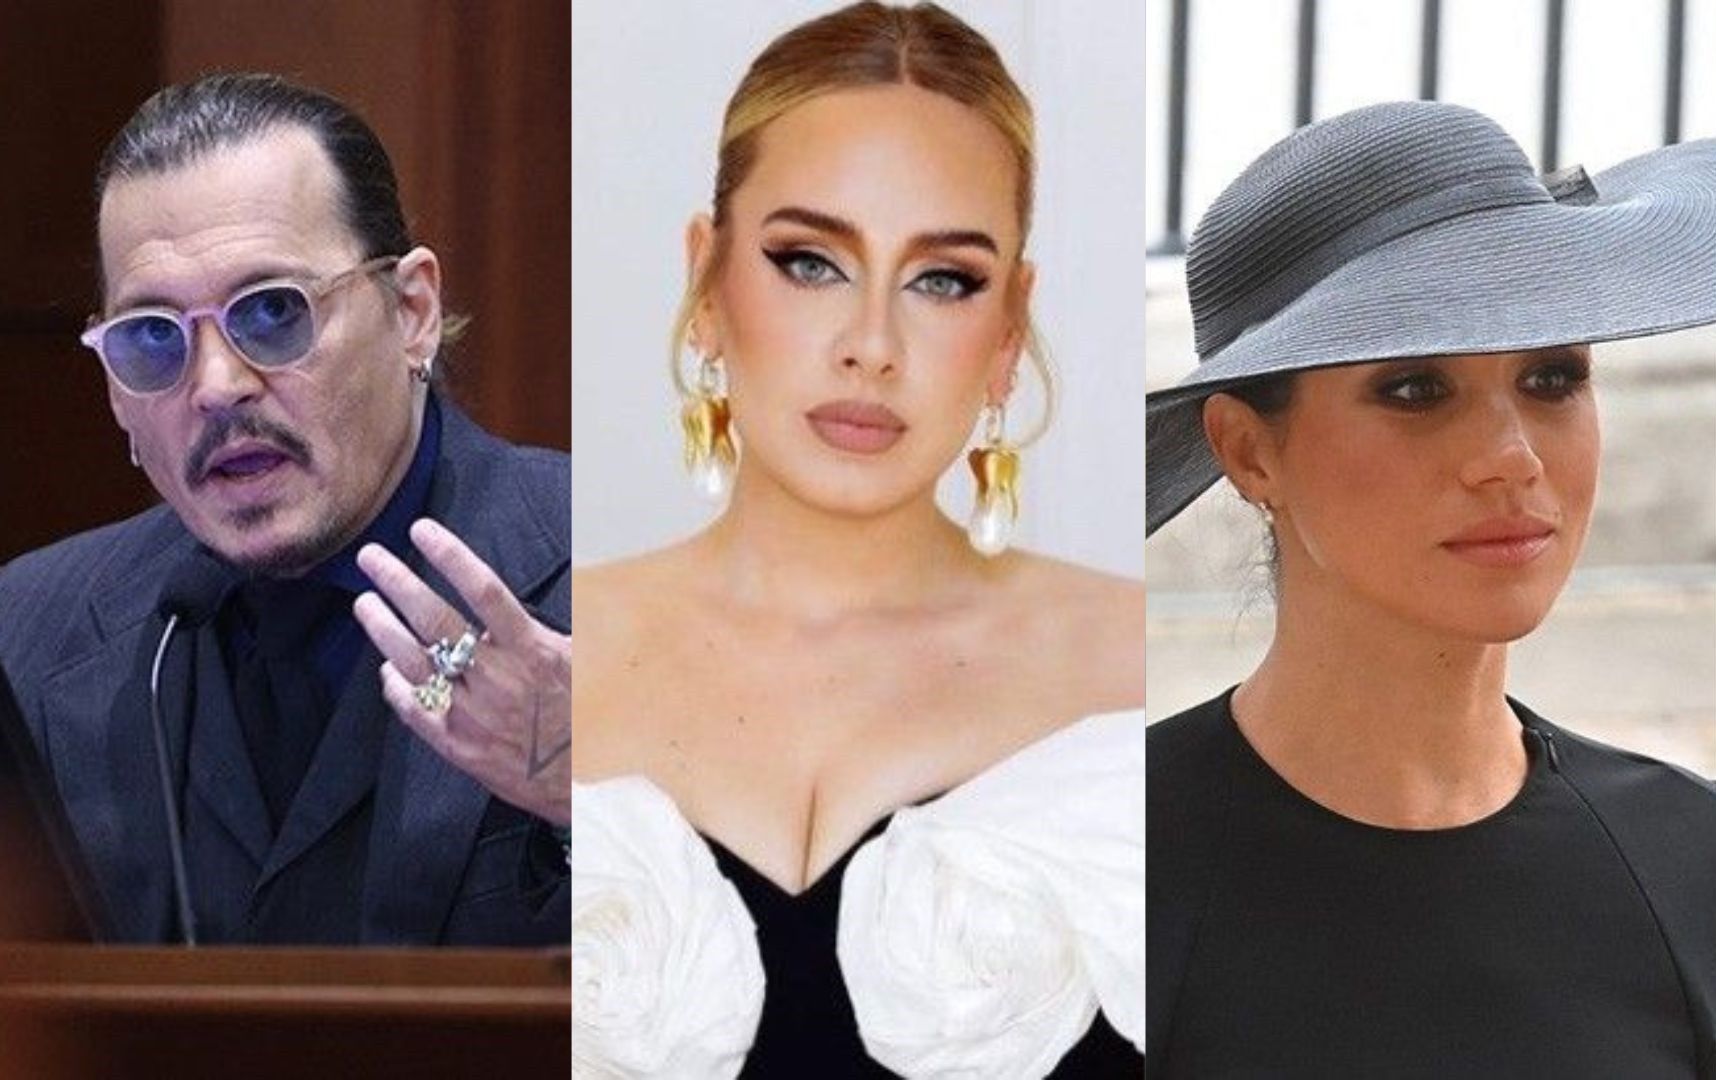 Johnny Depp, Adele among celebrity names misspelled the most online